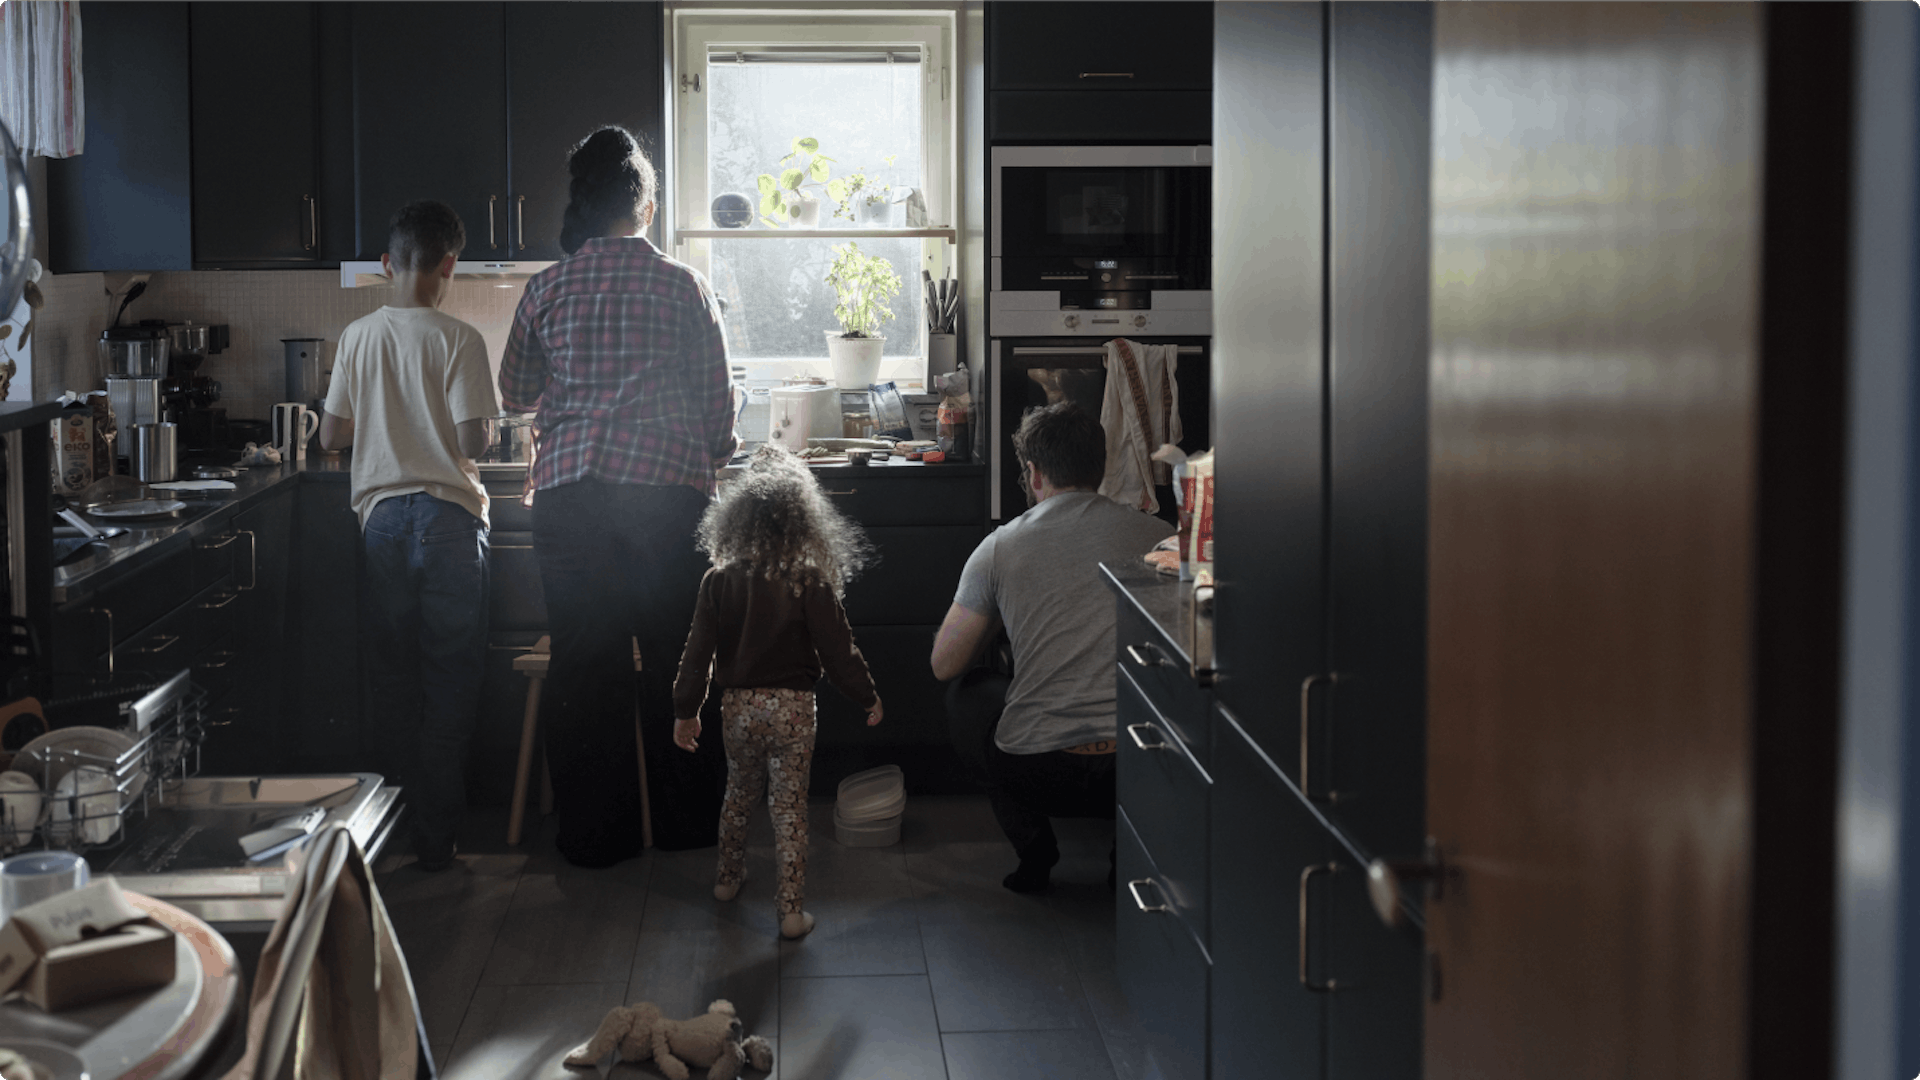 Magazine header - Family in kitchen